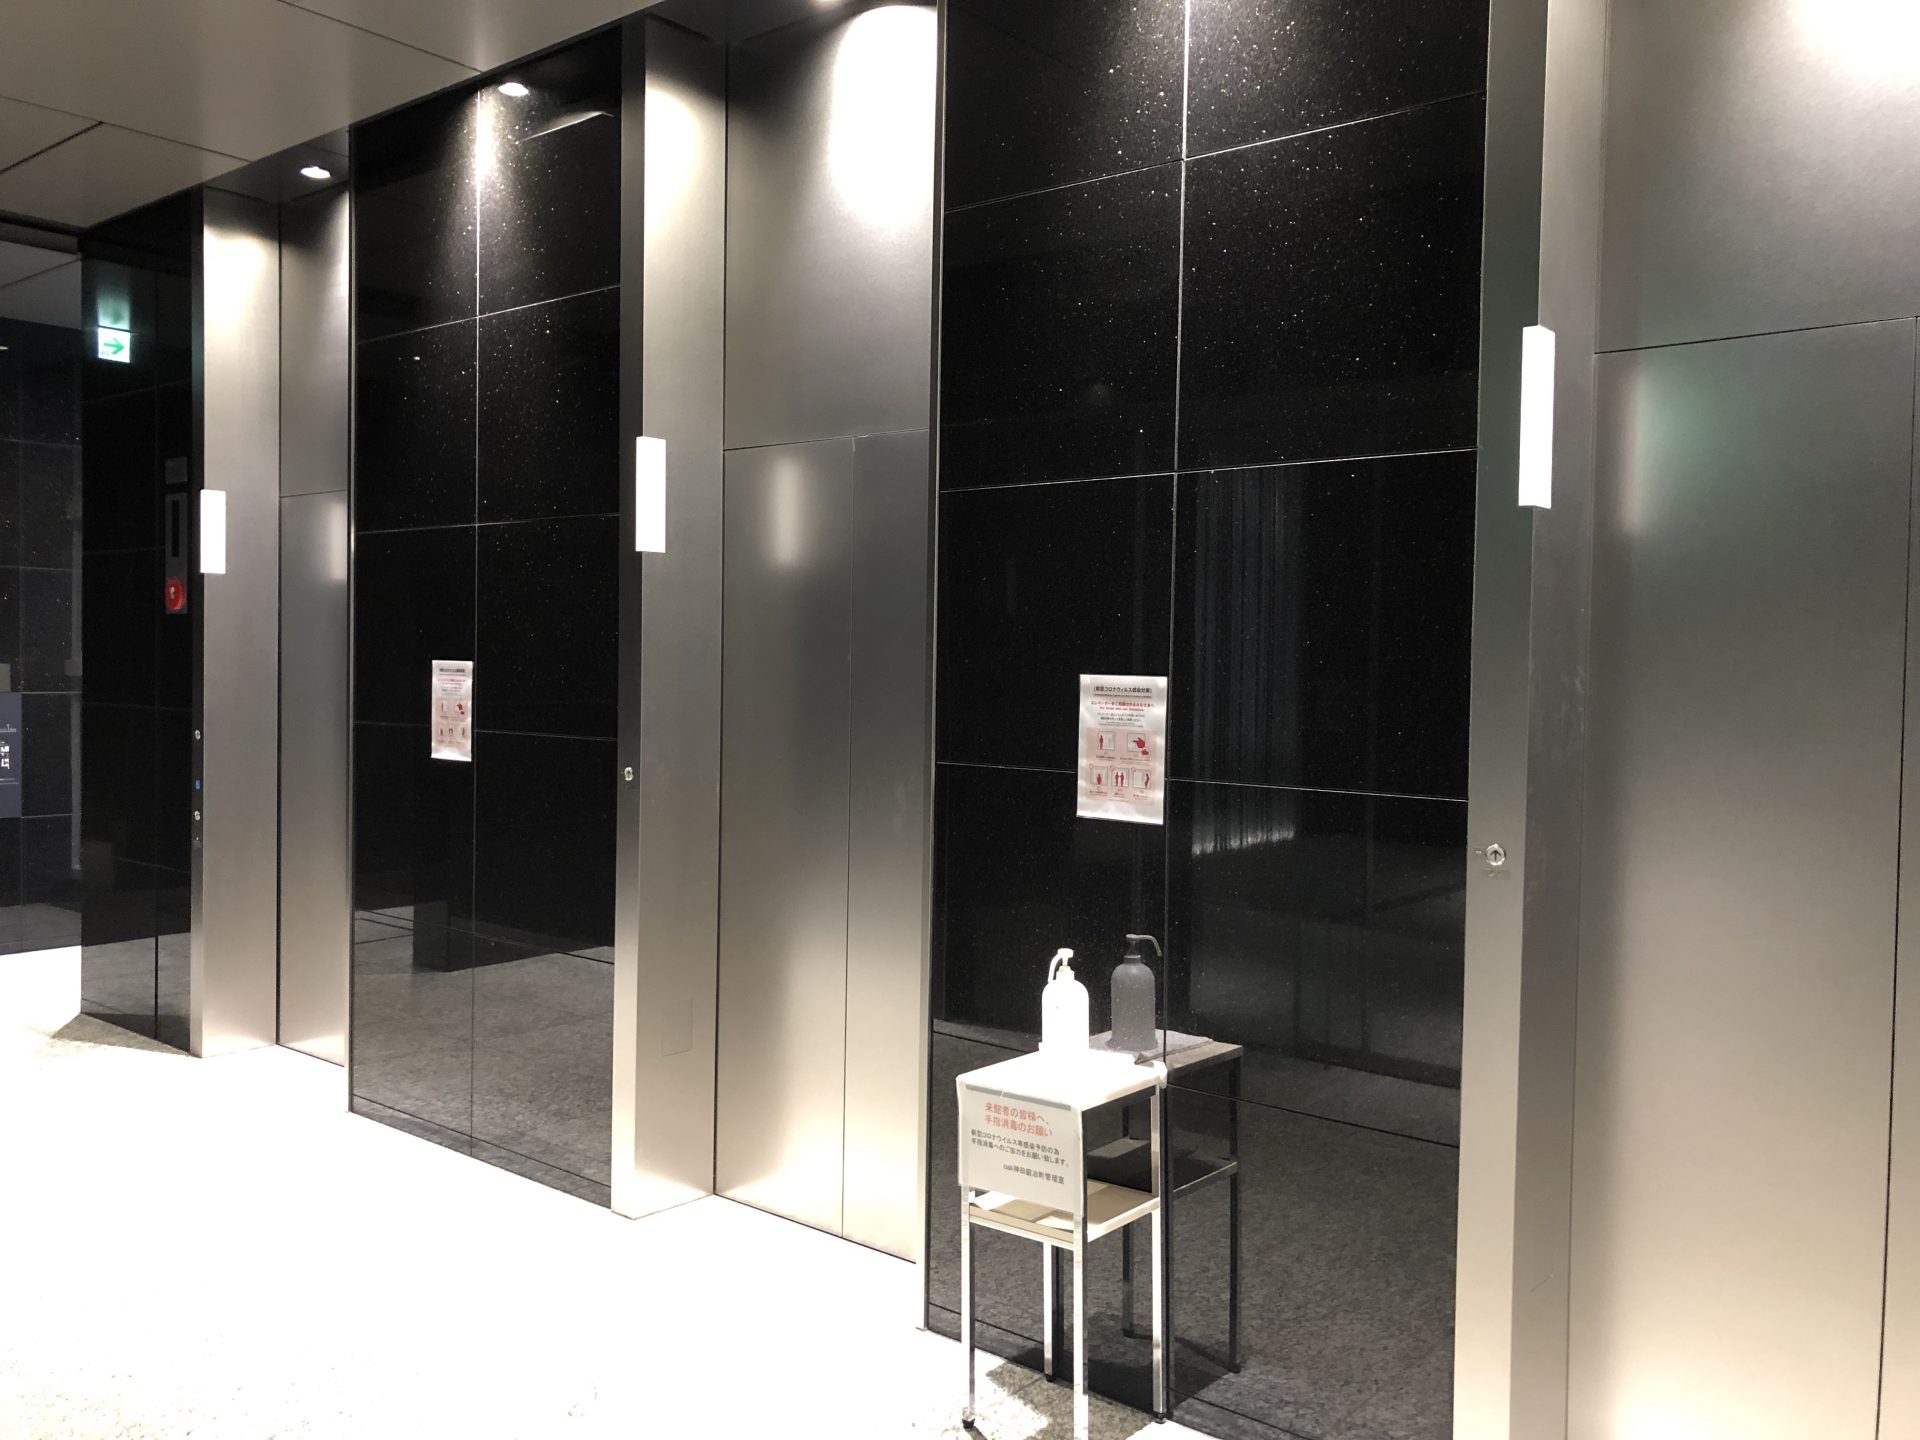 ビジネスエアポート神田 エレベーターで7Fへ上がり、正面が受付